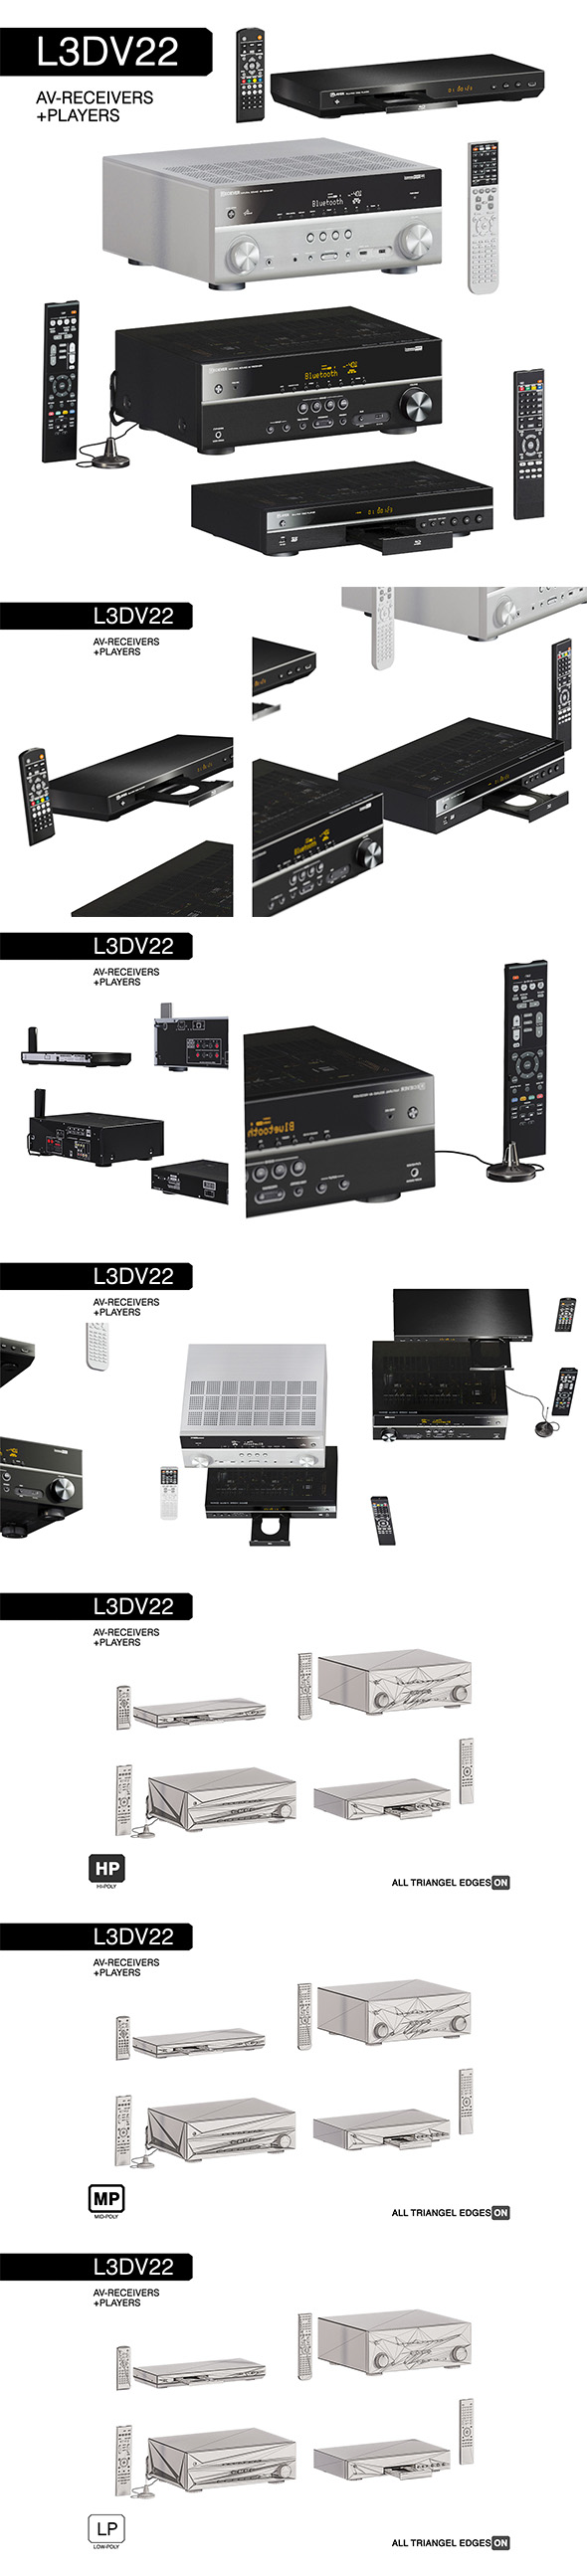 L3DV22G01 - av-receivers - 3Docean 25261024